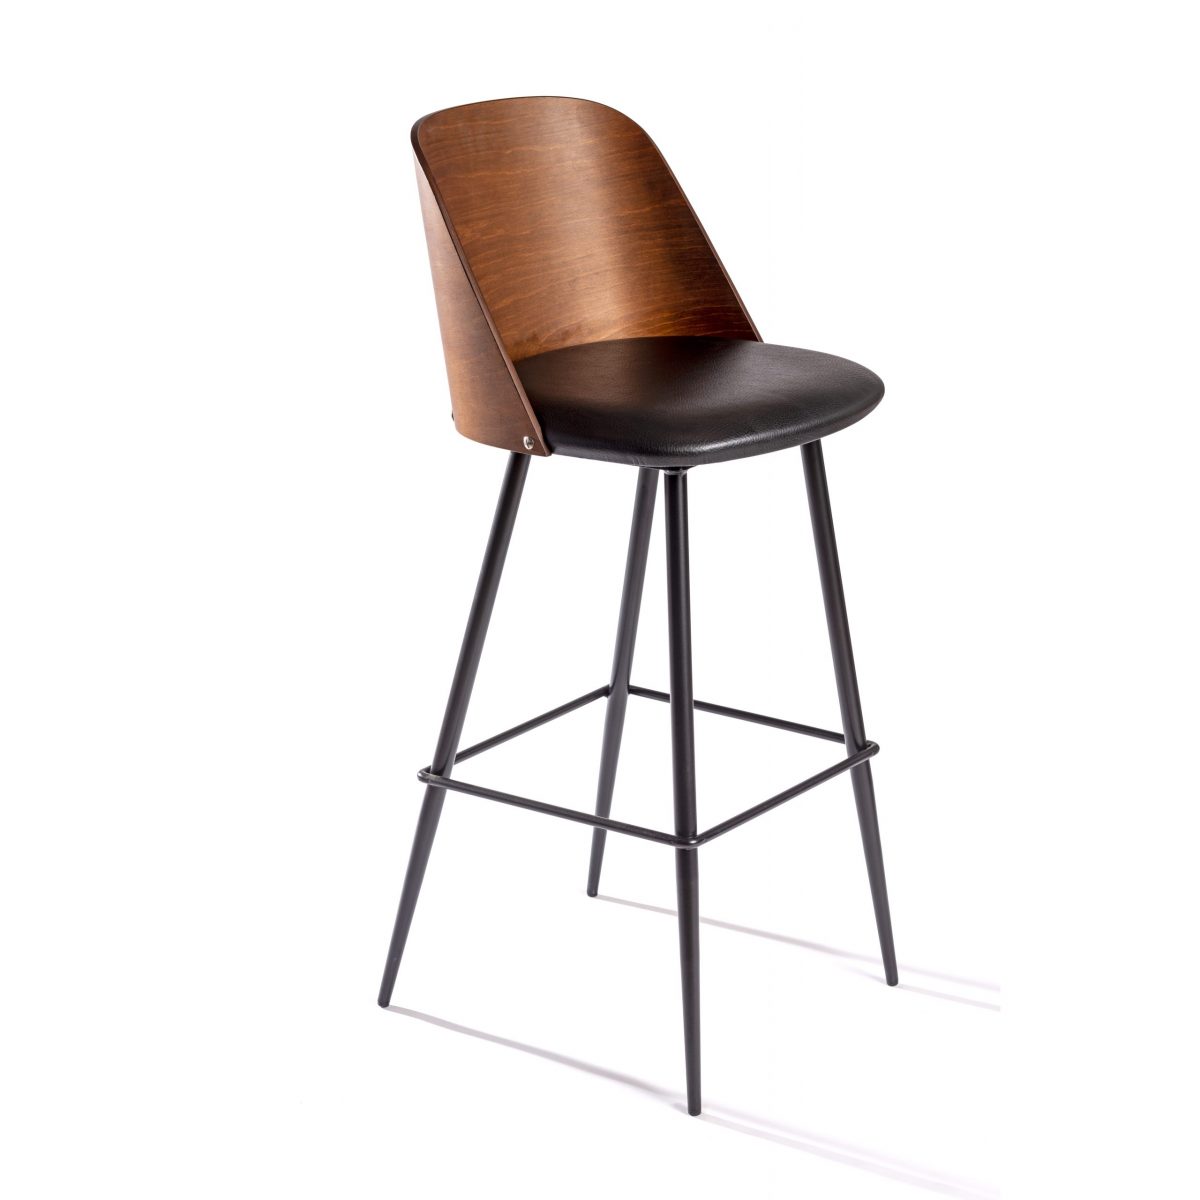 Taburete de bar con respaldo bajo, silla de bar alta, silla alta de madera  con respaldo taburete de tela, adecuado para bares, cocinas, cafeterías